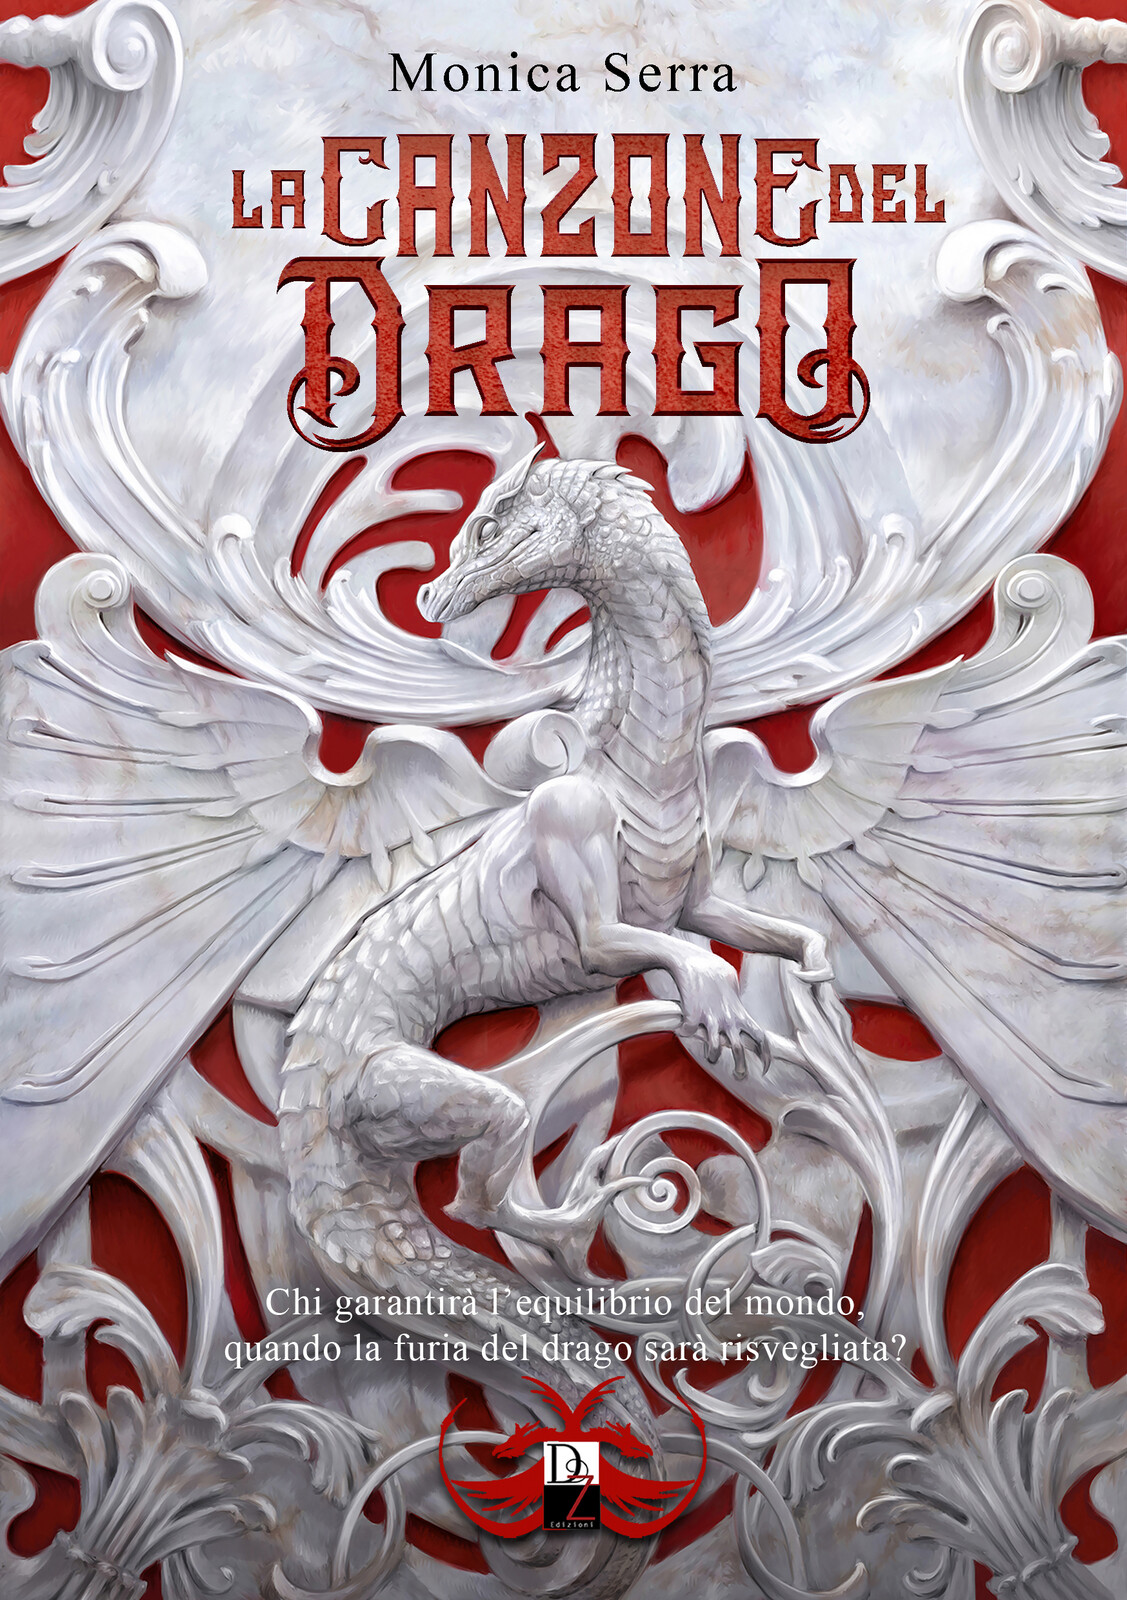 la canzone del drago - with lettering - dark zone edizioni - Antonello venditti illustration - monica serra writer -